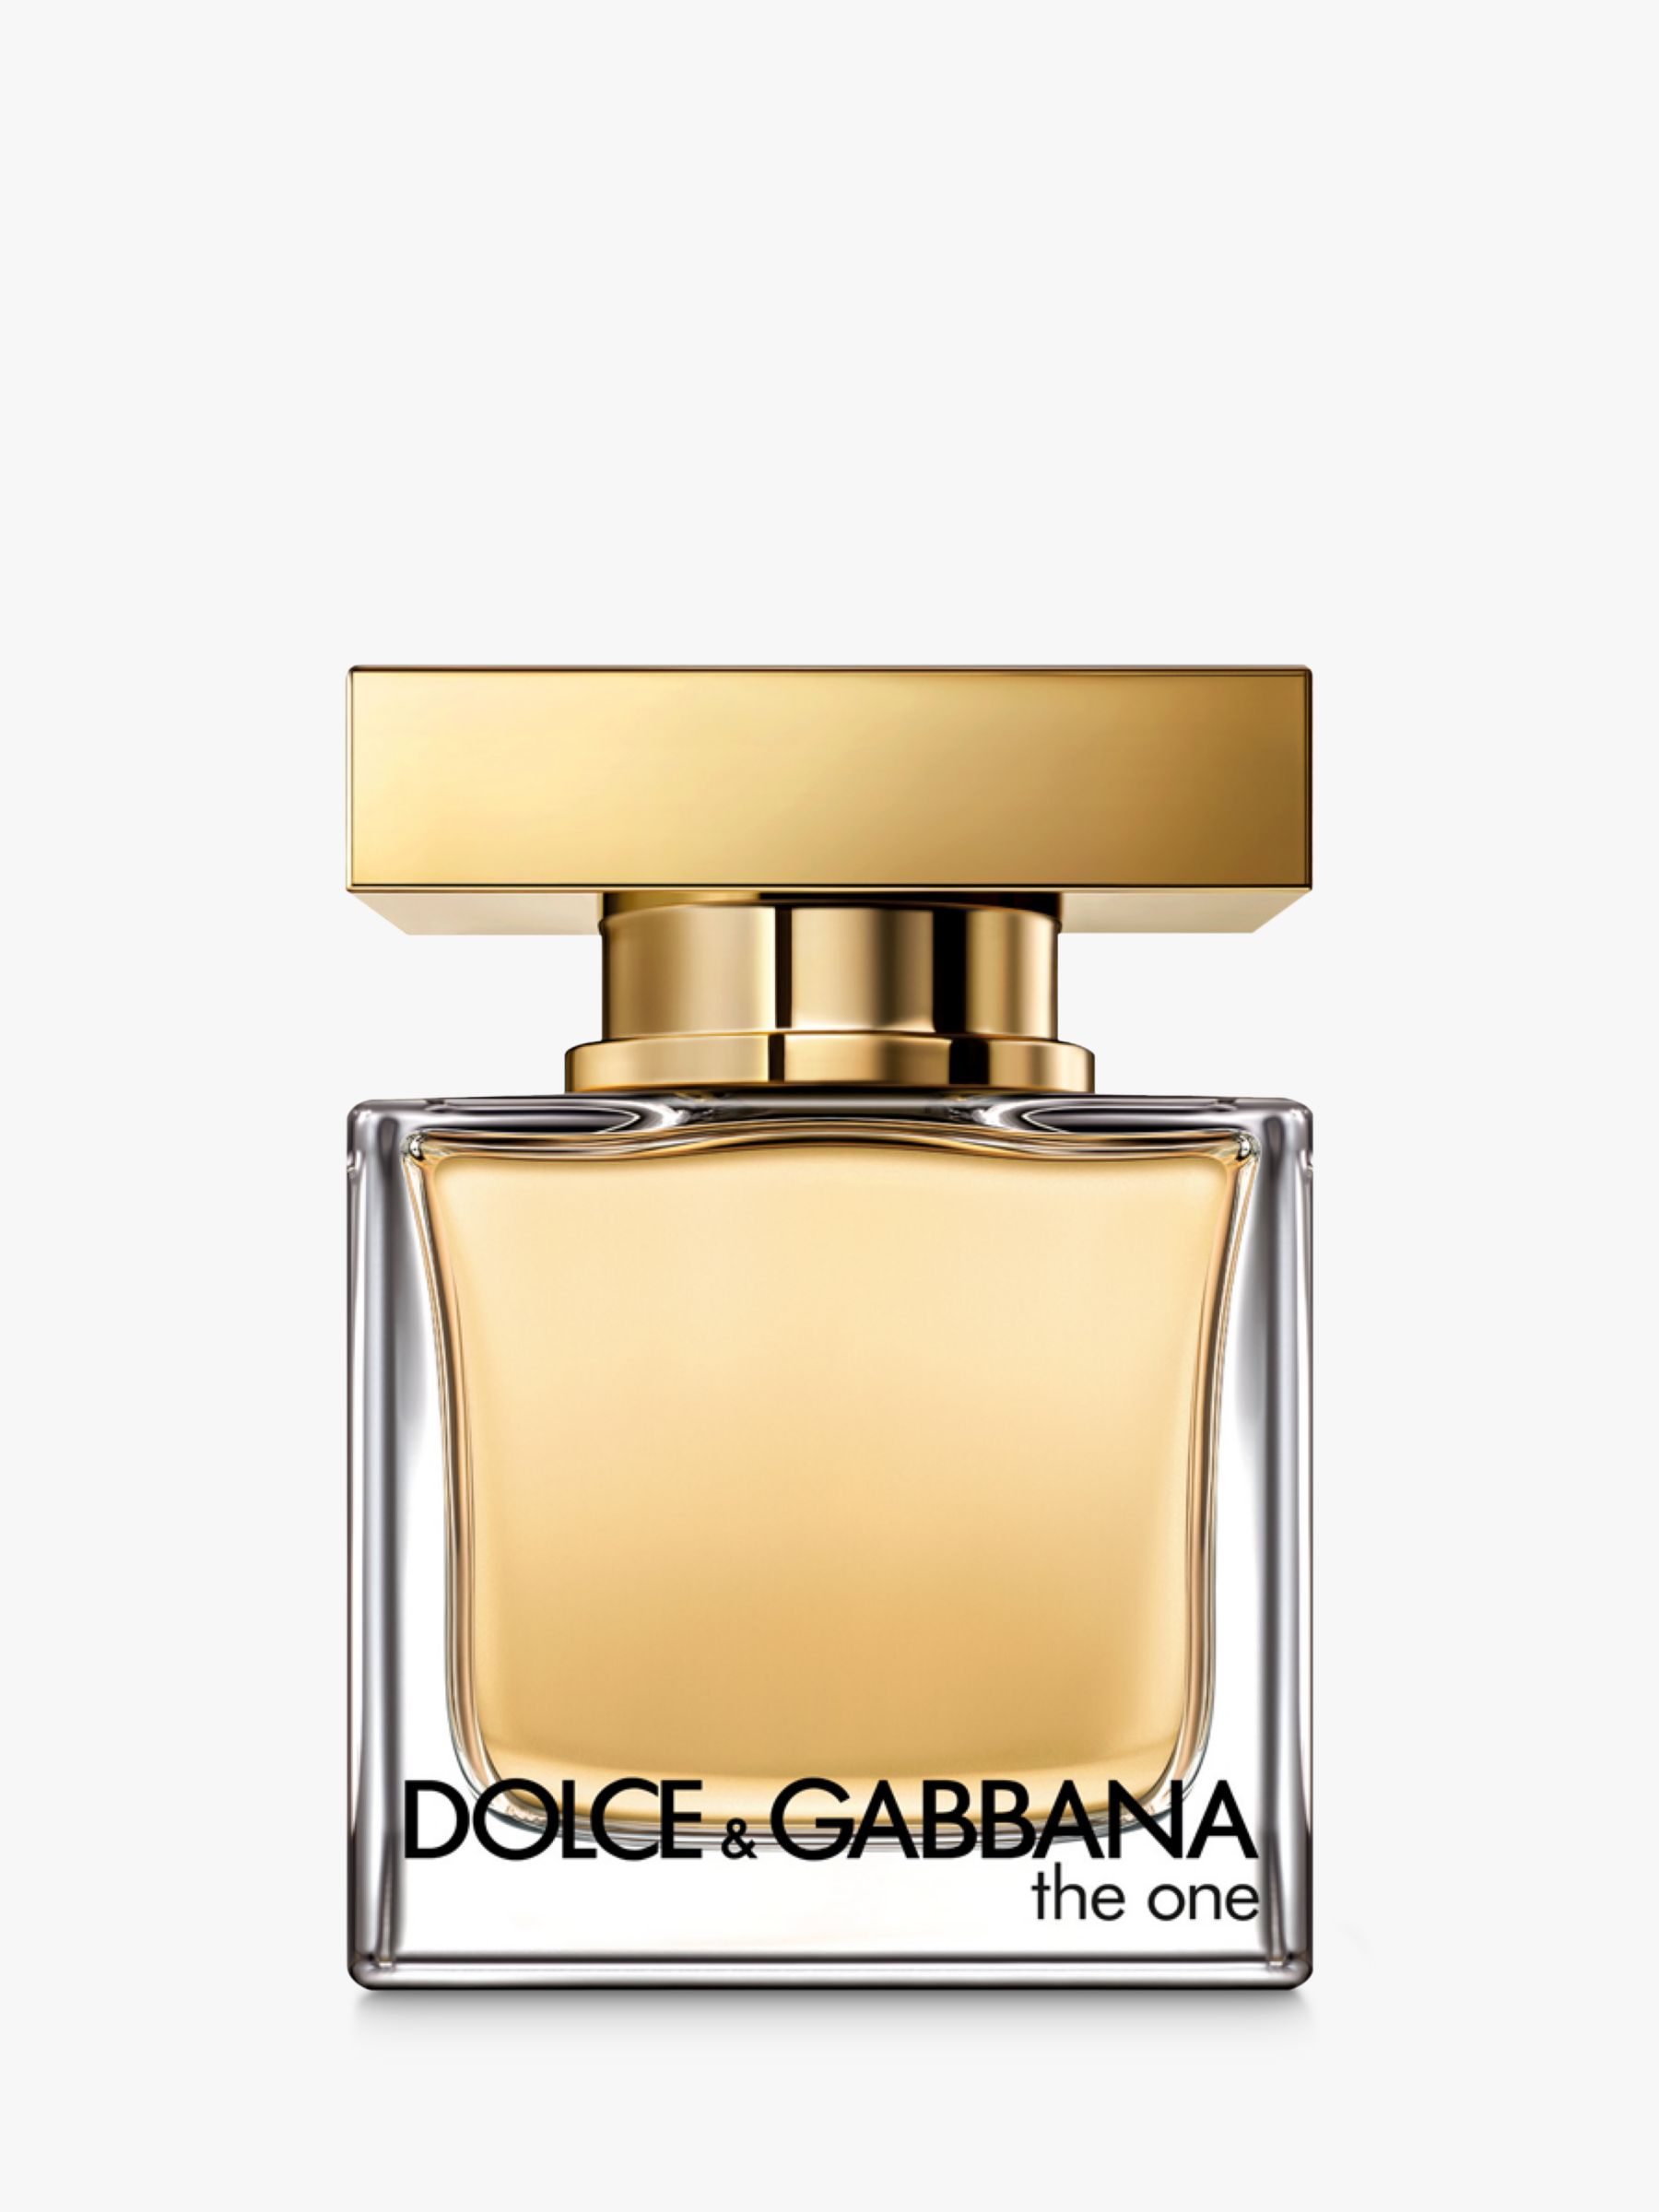 Dolce & Gabbana The One Eau de Toilette at John Lewis & Partners